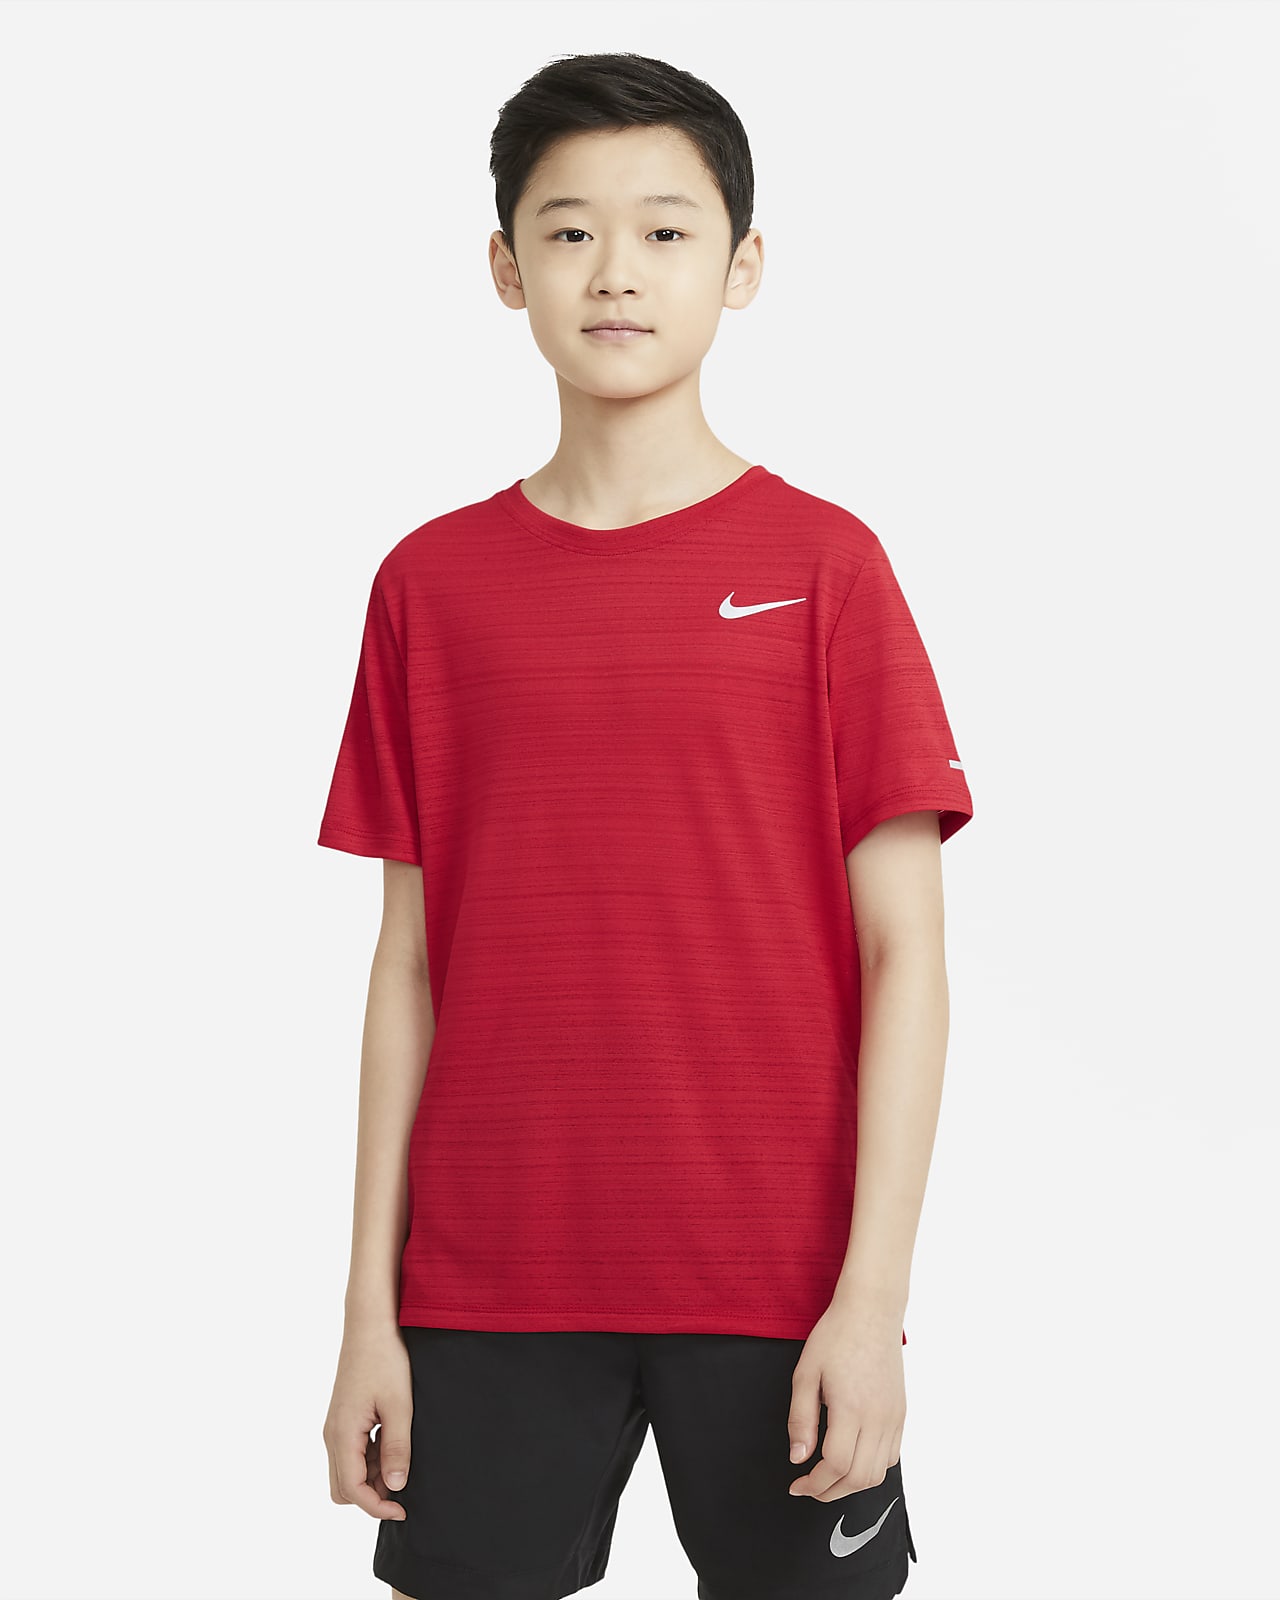 Nike de entrenamiento - Niño. Nike ES